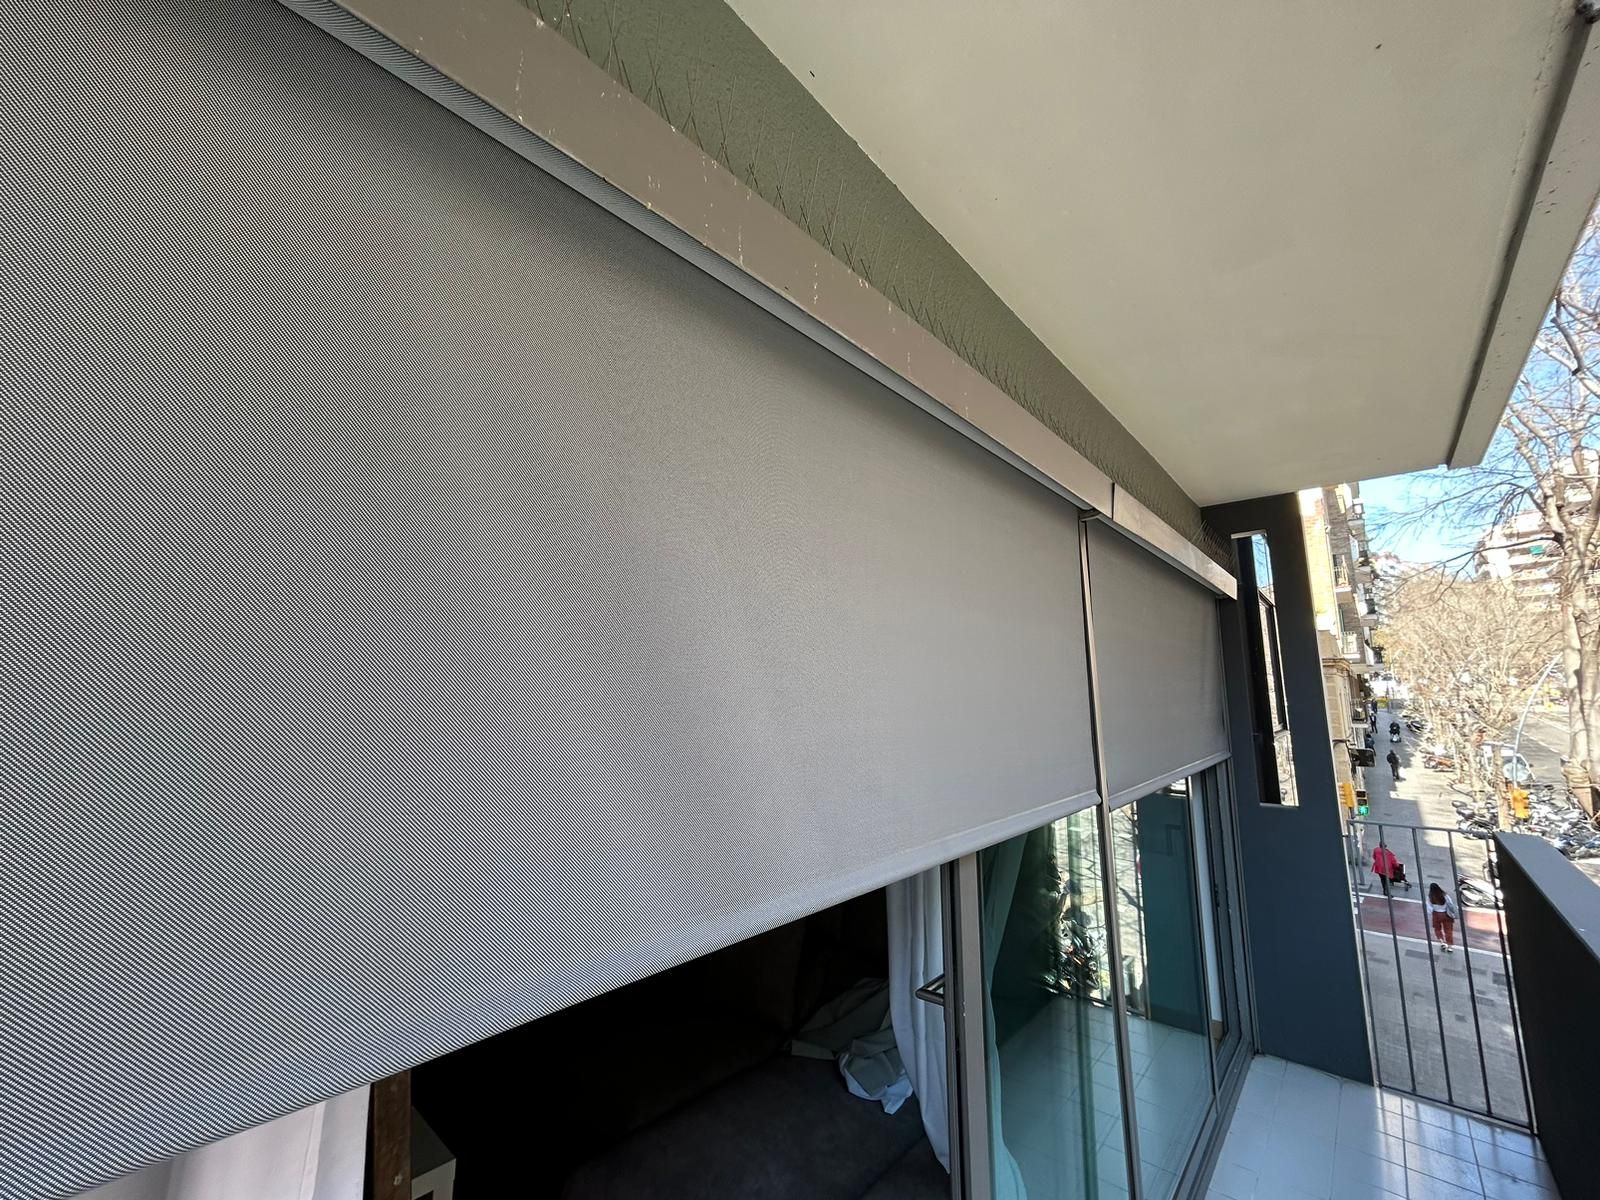 Instalación de cortina enrollable de exterior con tejido Sarga en vivienda de Barcelona